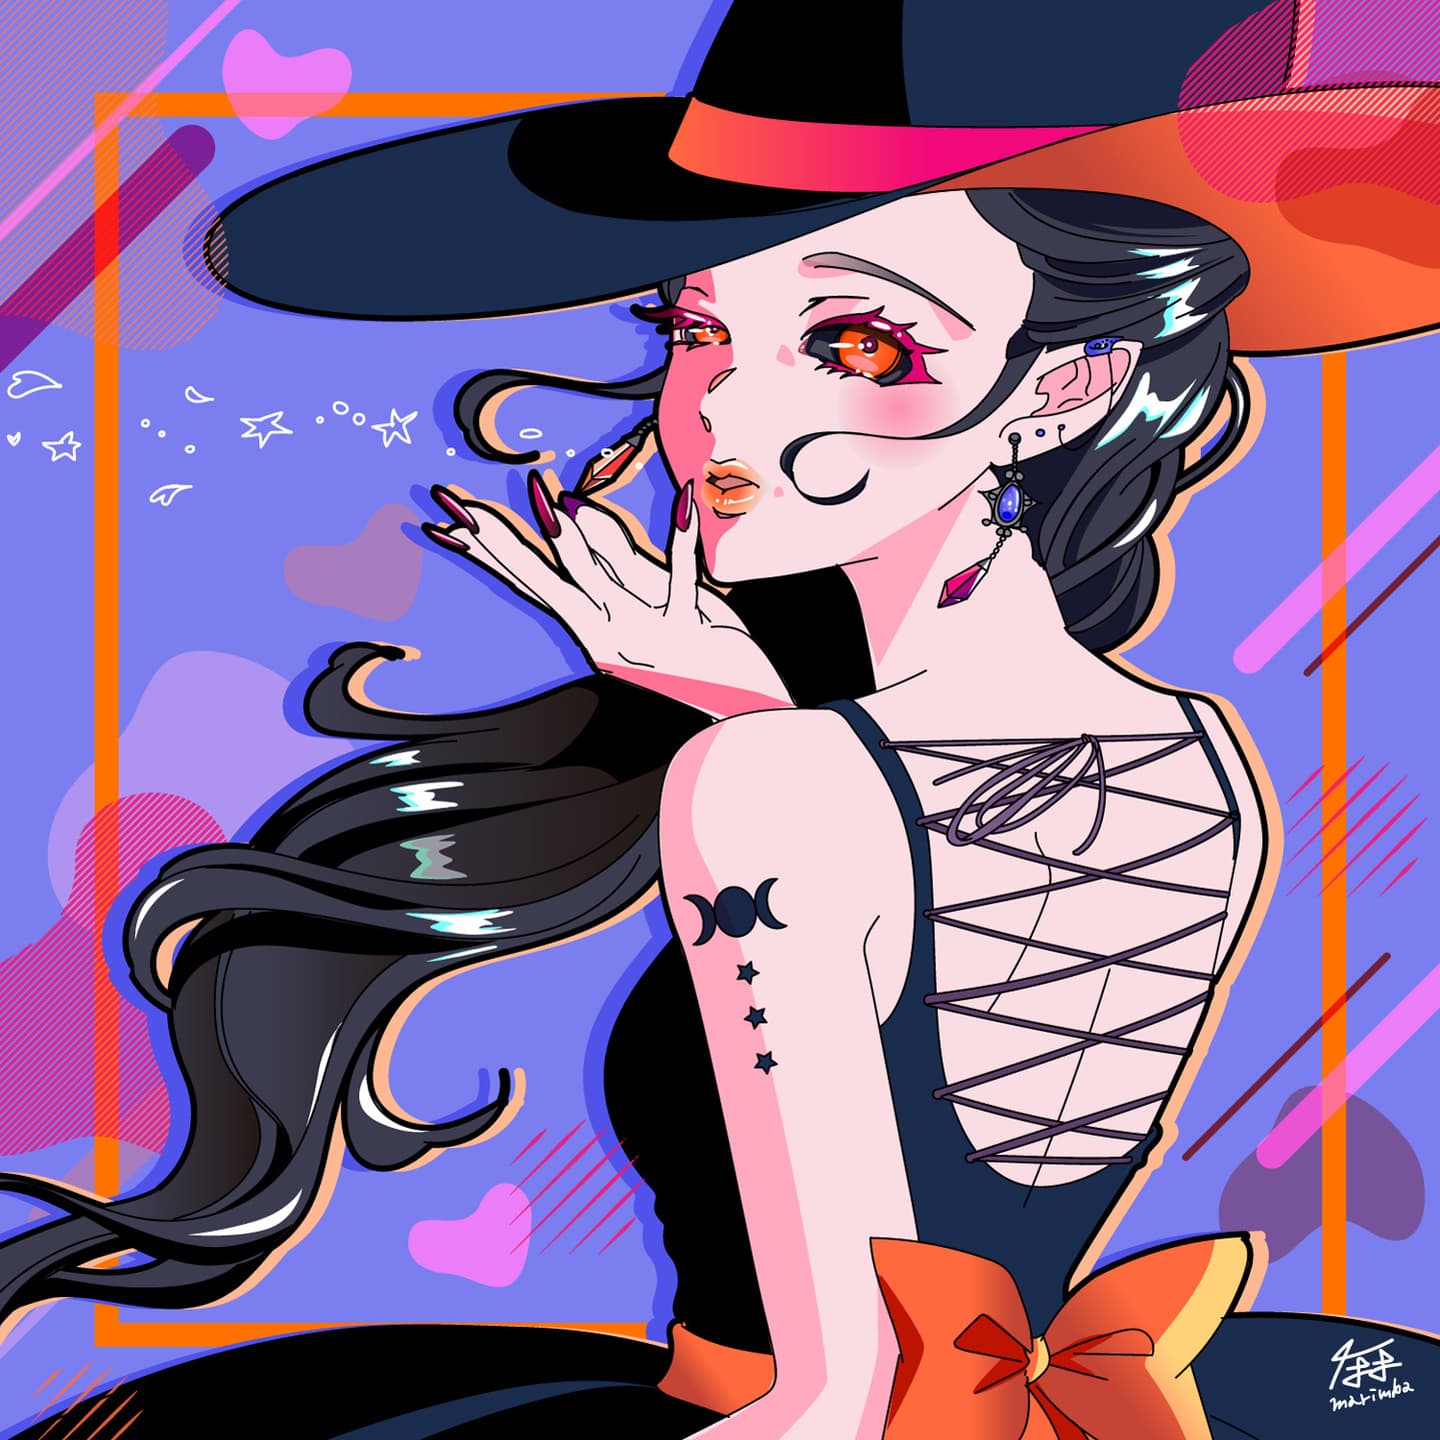 Witch/Marimba's Illustration